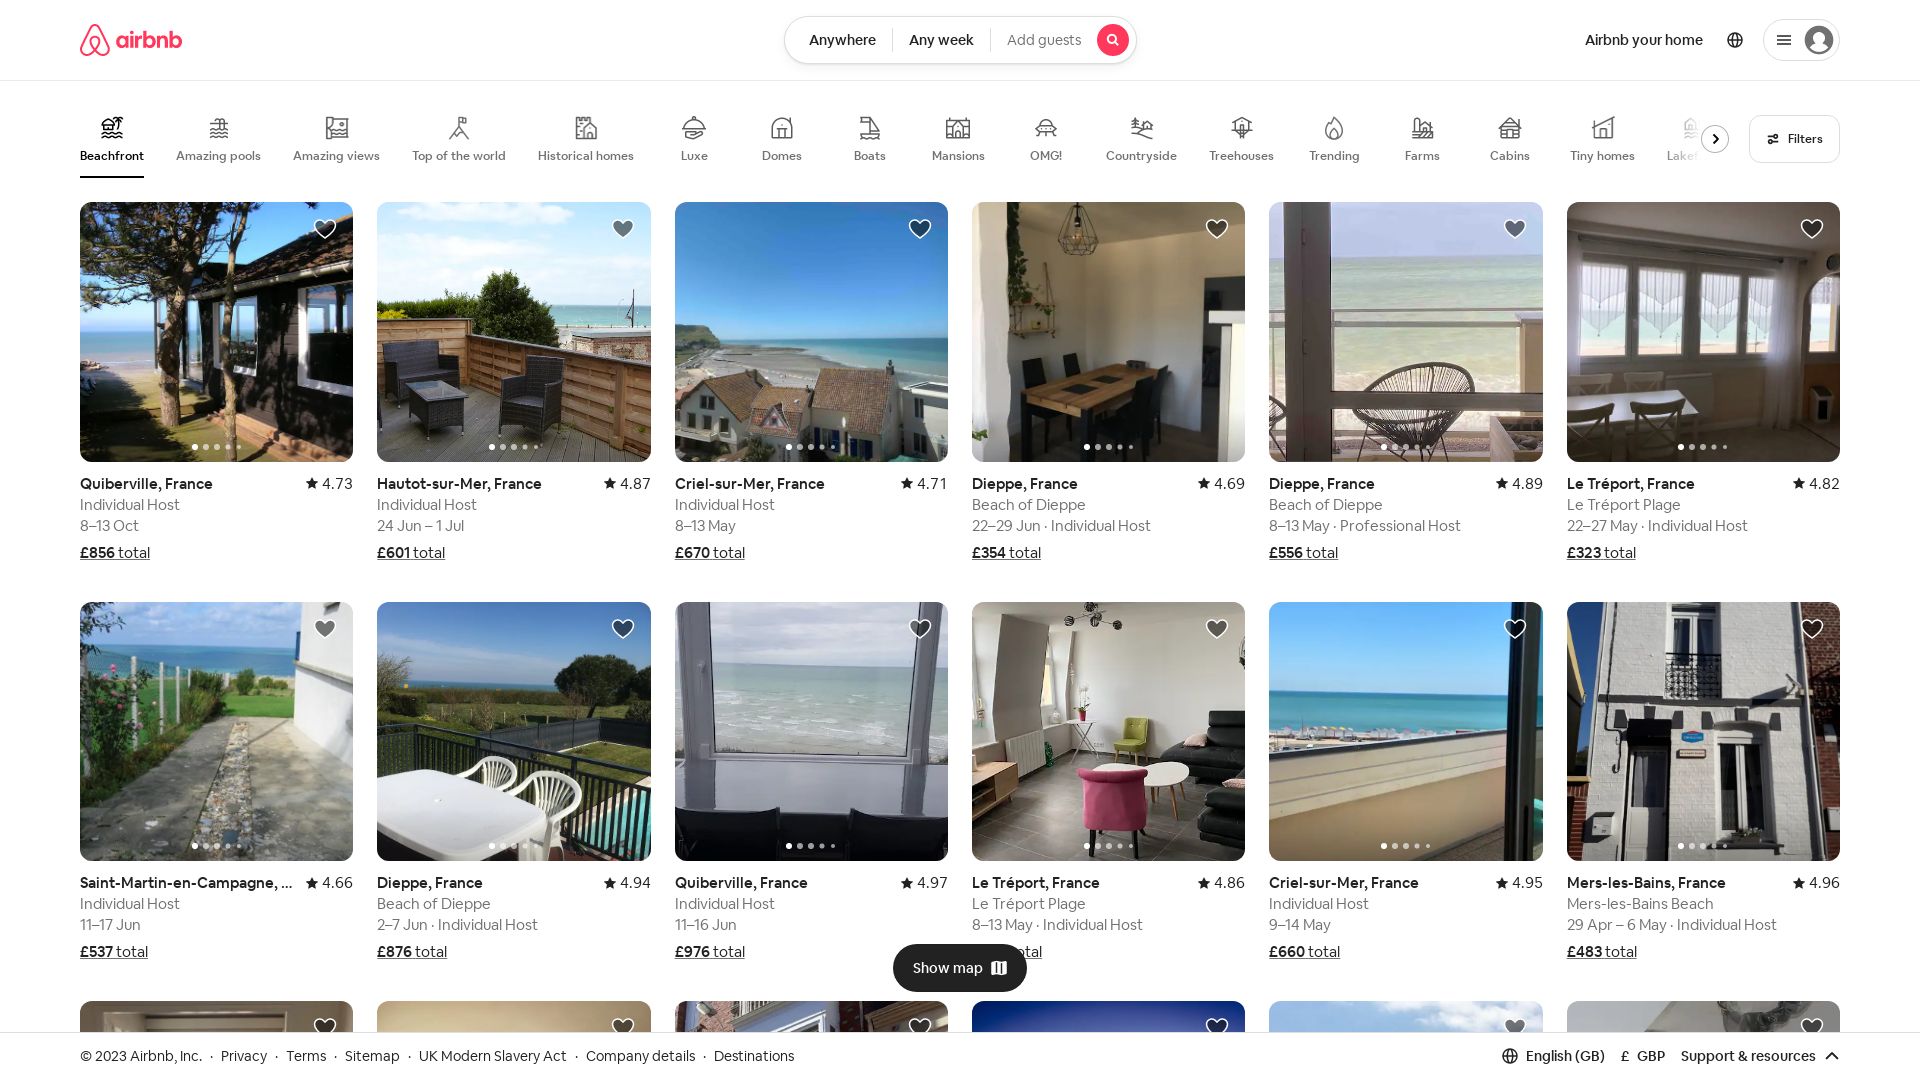 Estado web airbnb.co.uk está   ONLINE